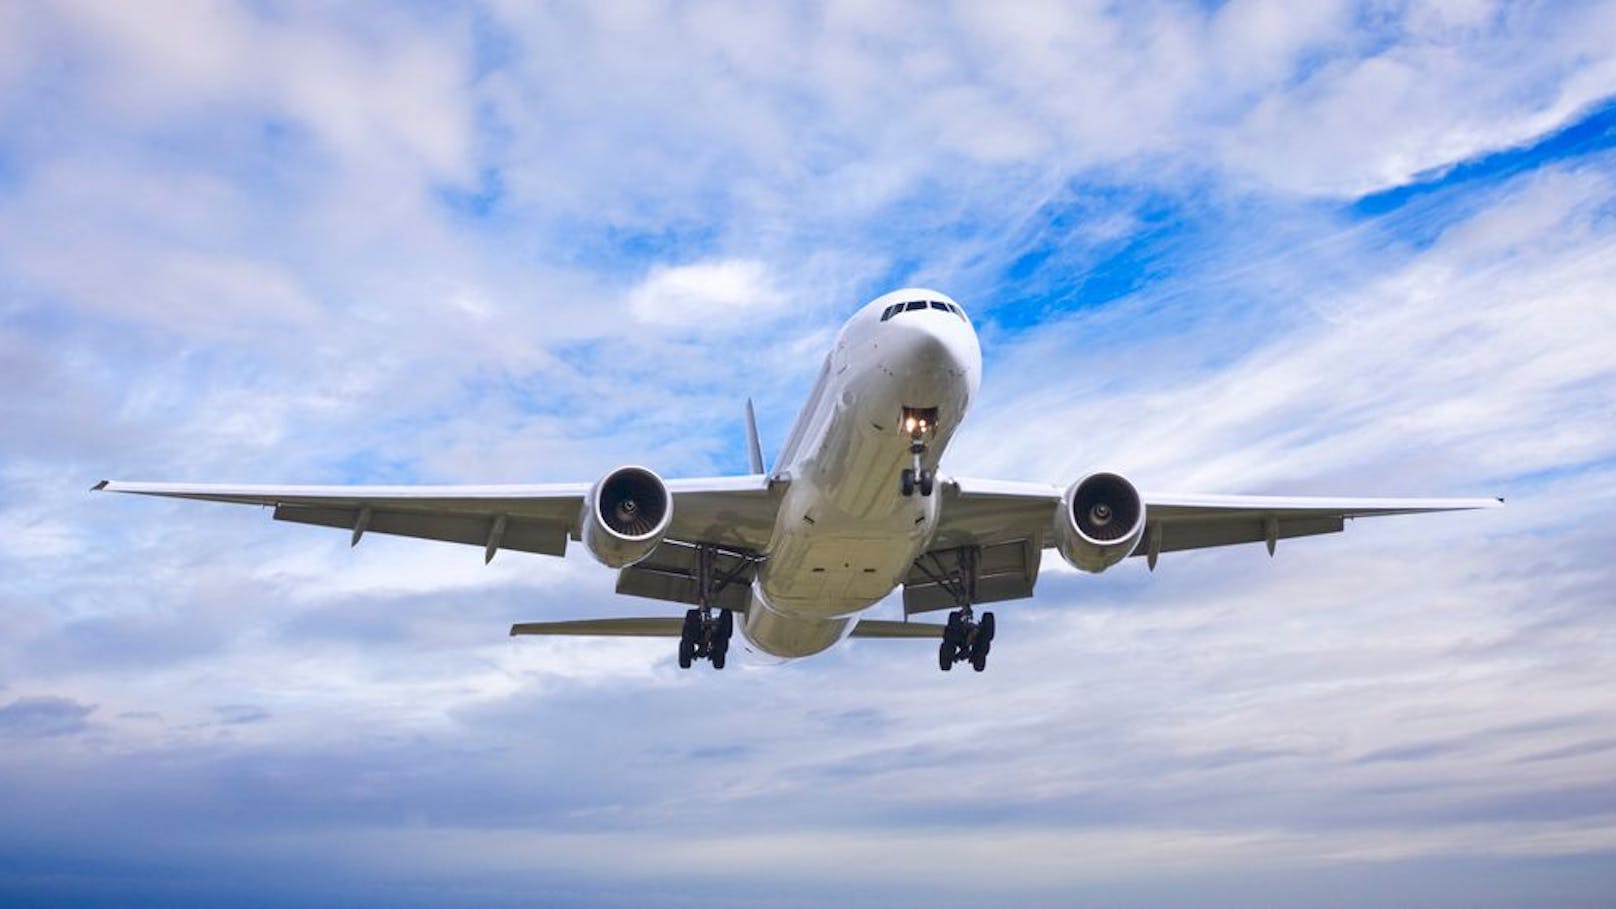 Wie eine Studie herausgefunden hat, führt der Klimawandel zu mehr Turbulenzen und Problemen im Flugverkehr.